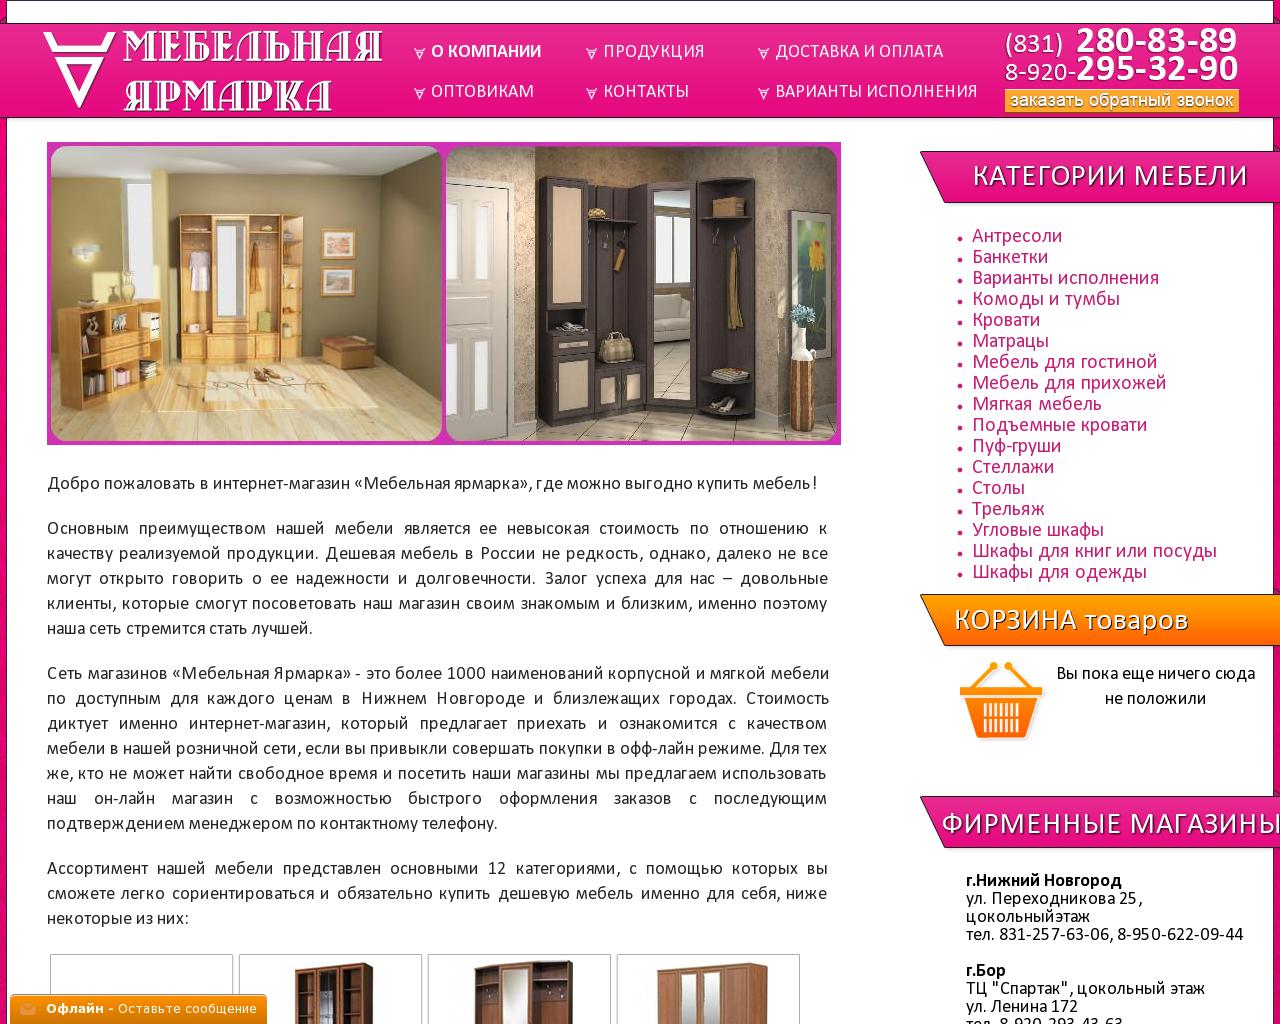 Изображение сайта talan52.ru в разрешении 1280x1024